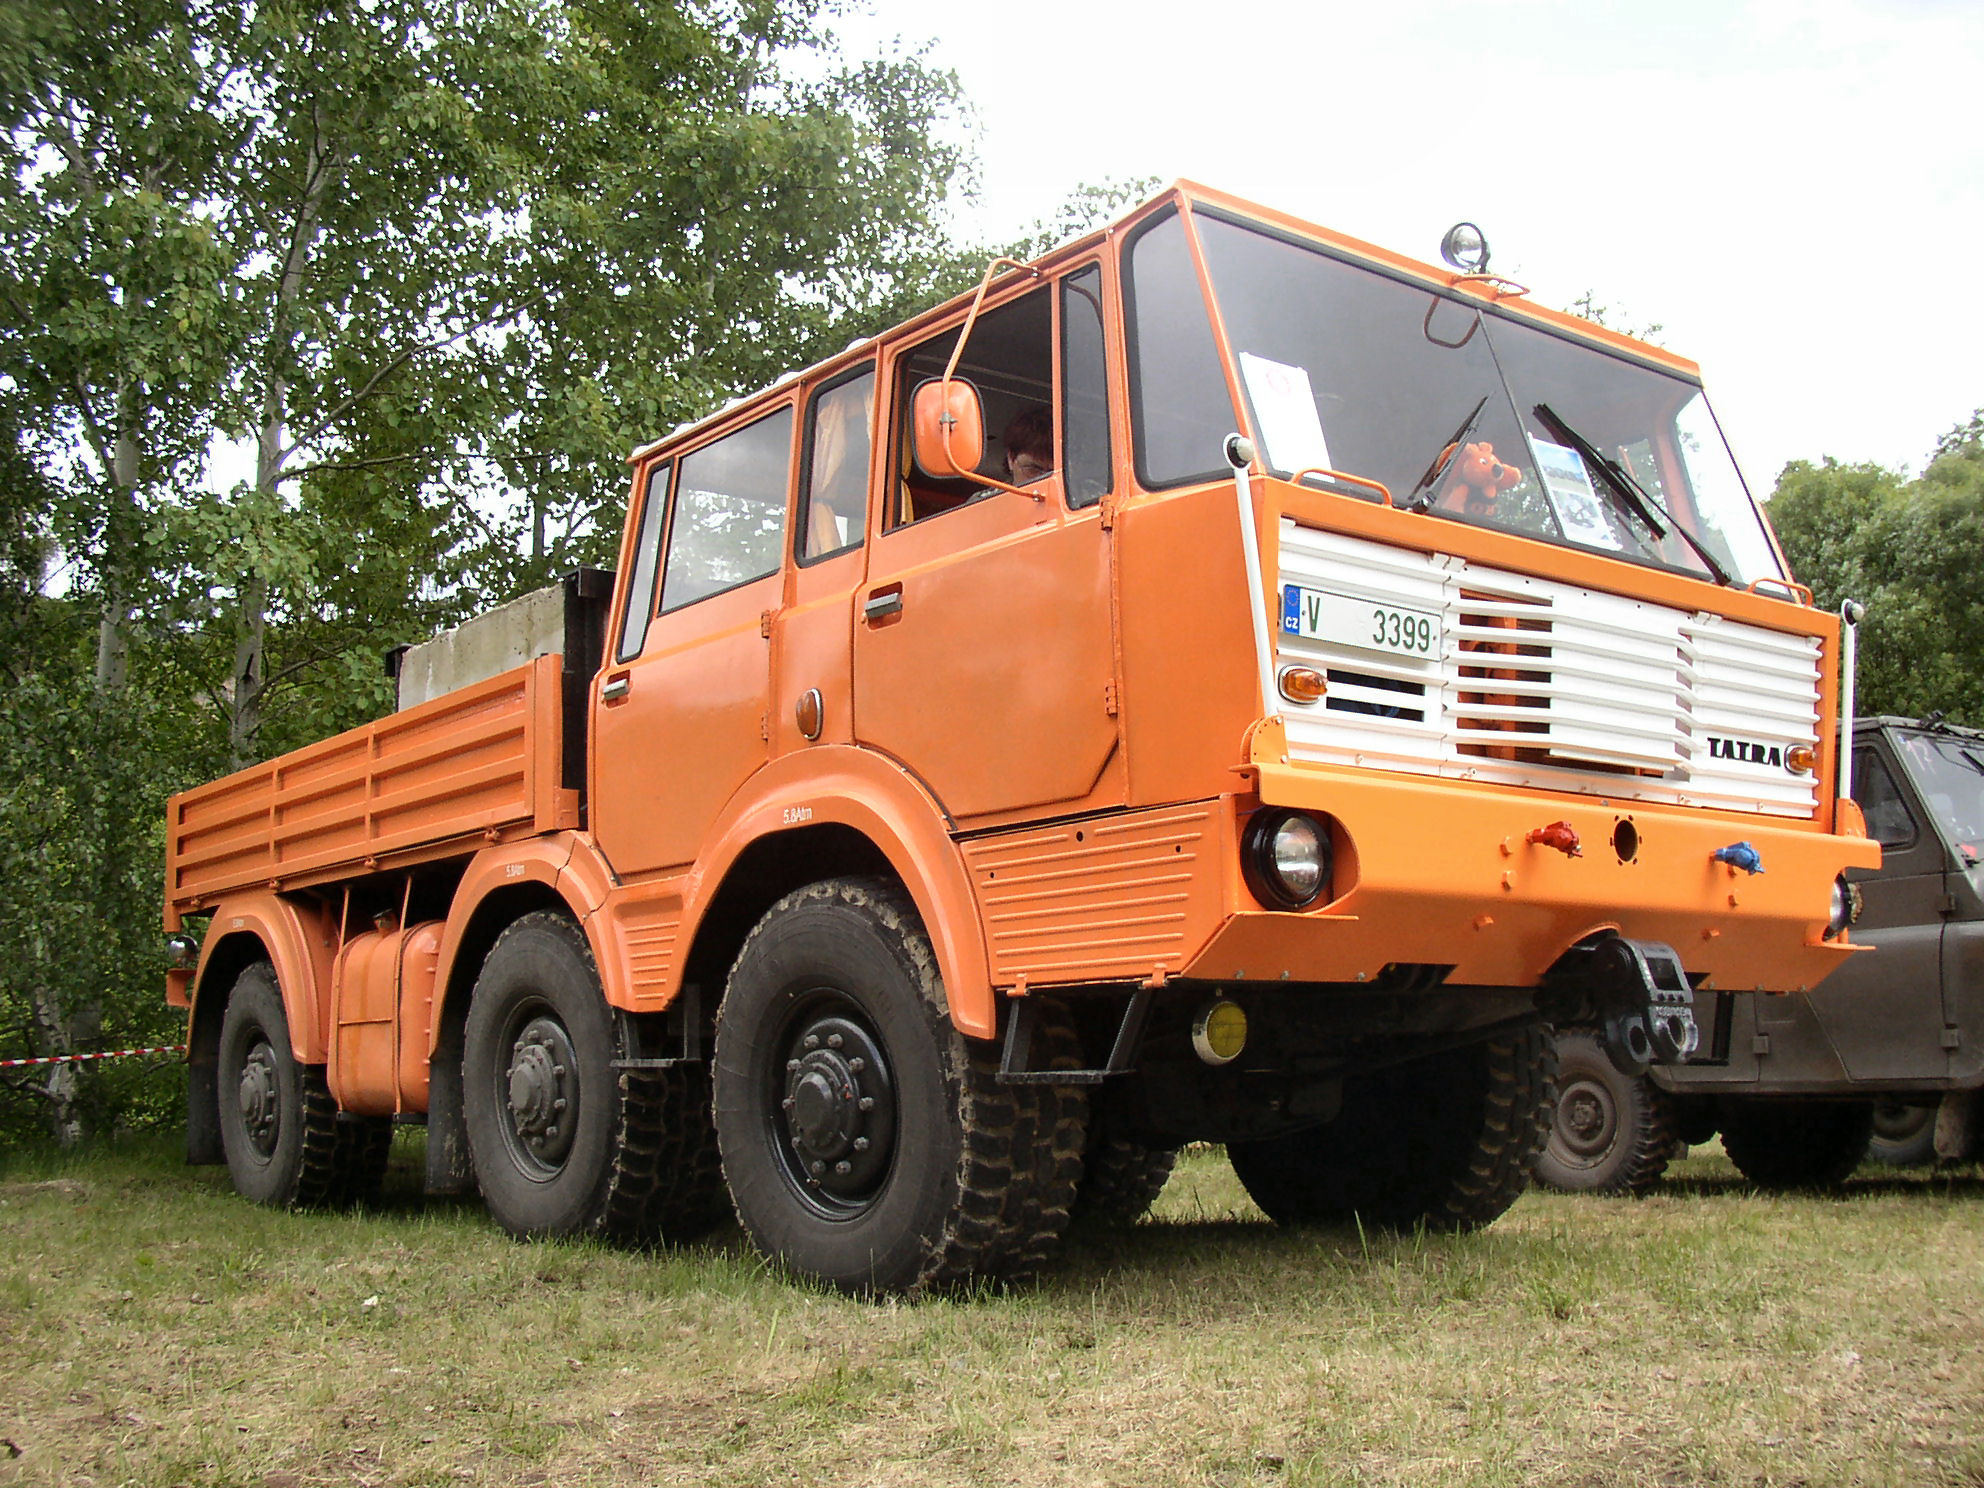 Tatra 813